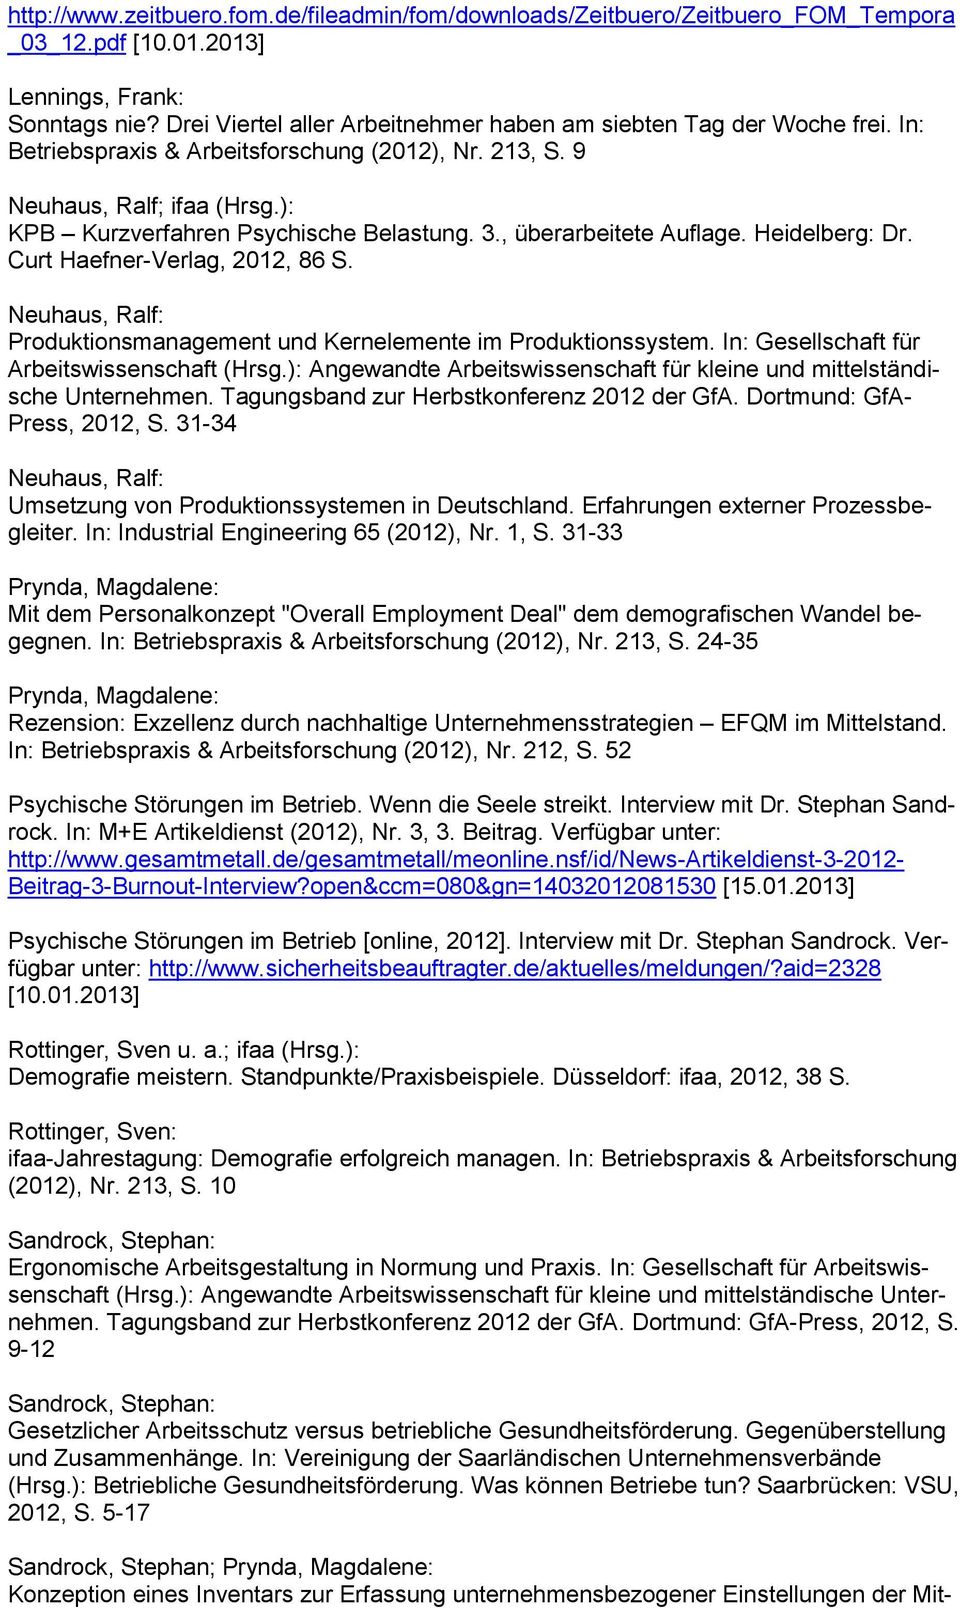 , überarbeitete Auflage. Heidelberg: Dr. Curt Haefner-Verlag, 2012, 86 S. Produktionsmanagement und Kernelemente im Produktionssystem. In: Gesellschaft für Arbeitswissenschaft (Hrsg.